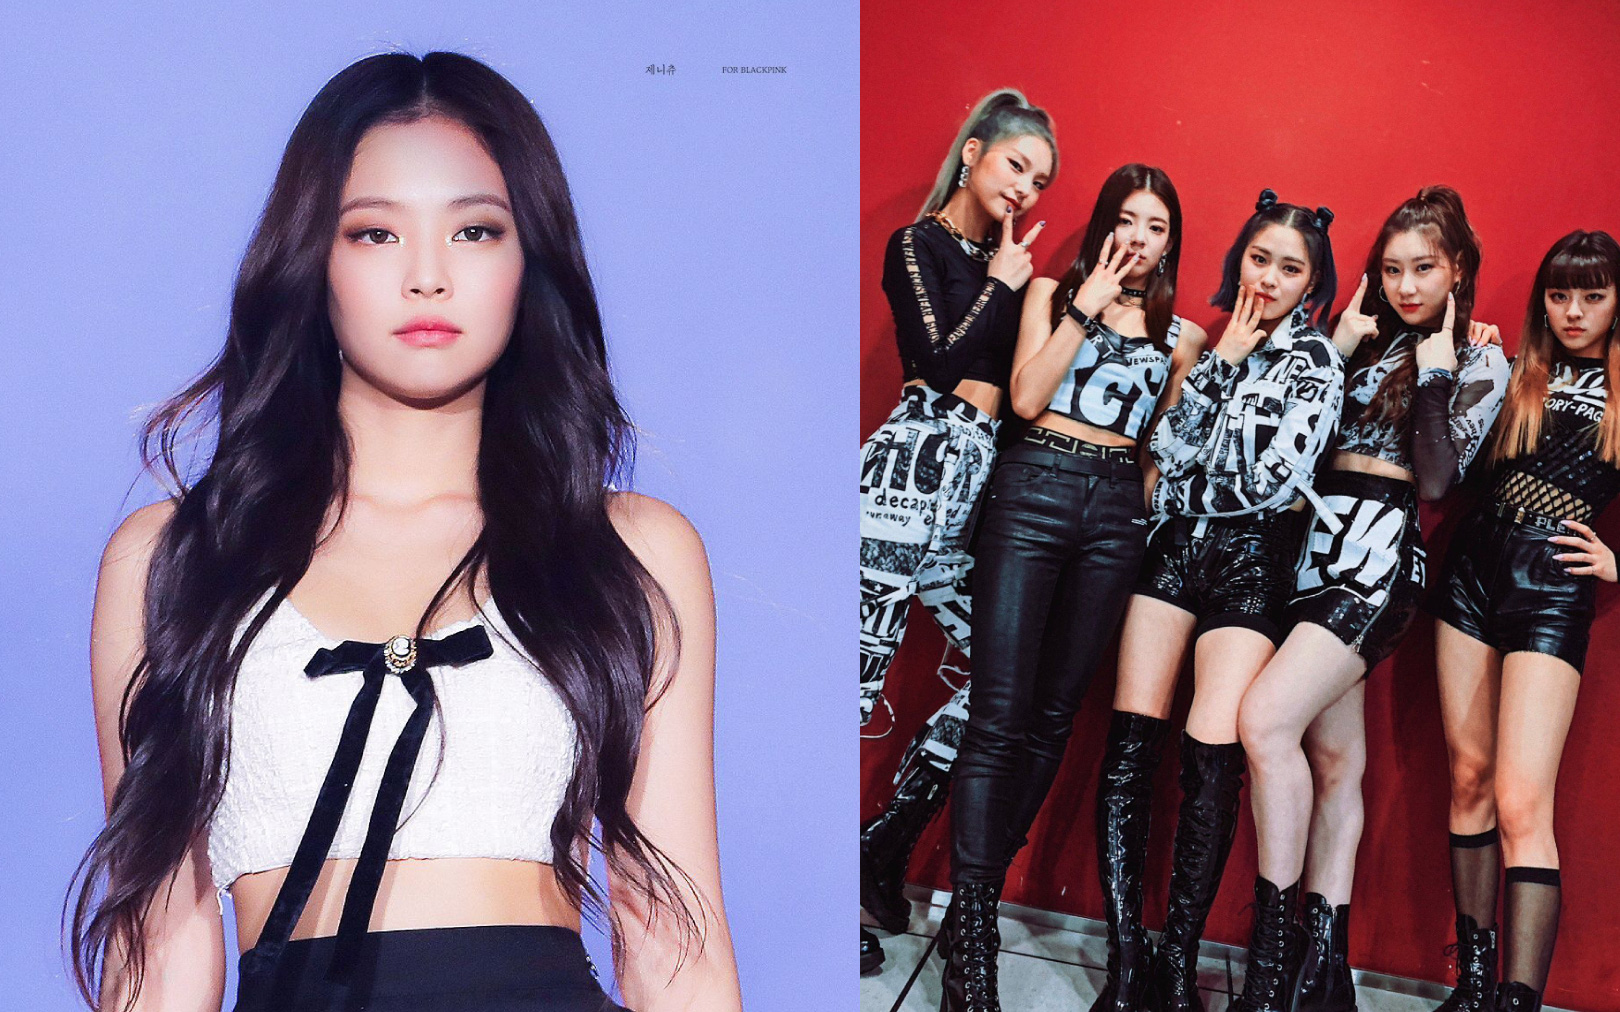 Sau scandal hỗn láo với Jennie (BLACKPINK), nhóm nữ Kpop mới lại được so sánh với "em gái" TWICE, TXT, NCT127